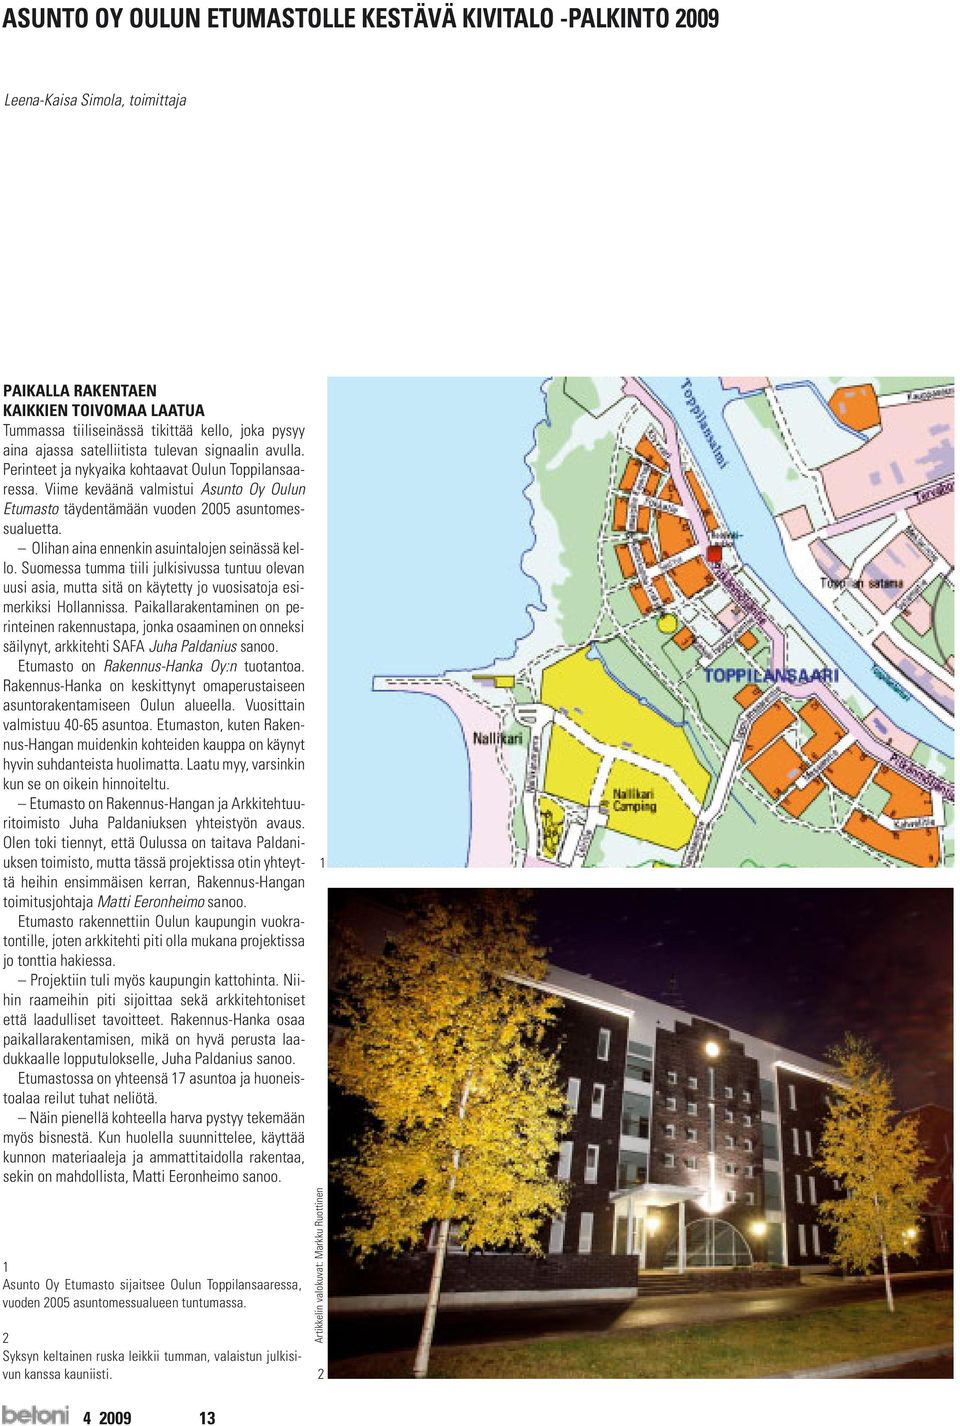 Viime keväänä valmistui Asunto Oy Oulun Etumasto täydentämään vuoden 2005 asuntomessualuetta. Olihan aina ennenkin asuintalojen seinässä kello.